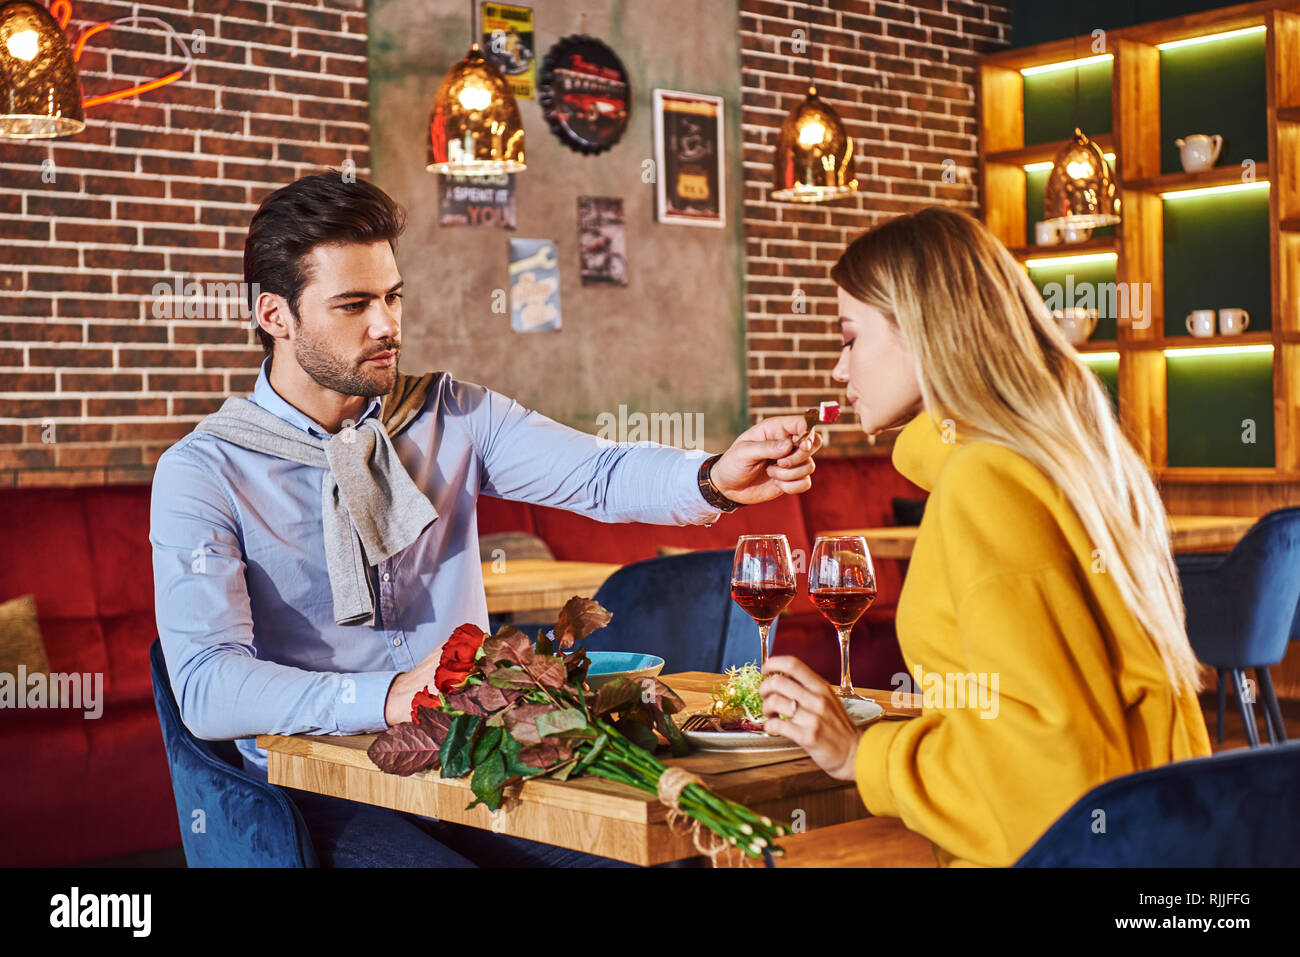 Cena romantica. Uomo in camicia blu sfamare la sua bella ragazza bionda nel ristorante. Rose rosse sono sdraiato sul tavolo. Giovane donna bionda senape in sw Foto Stock